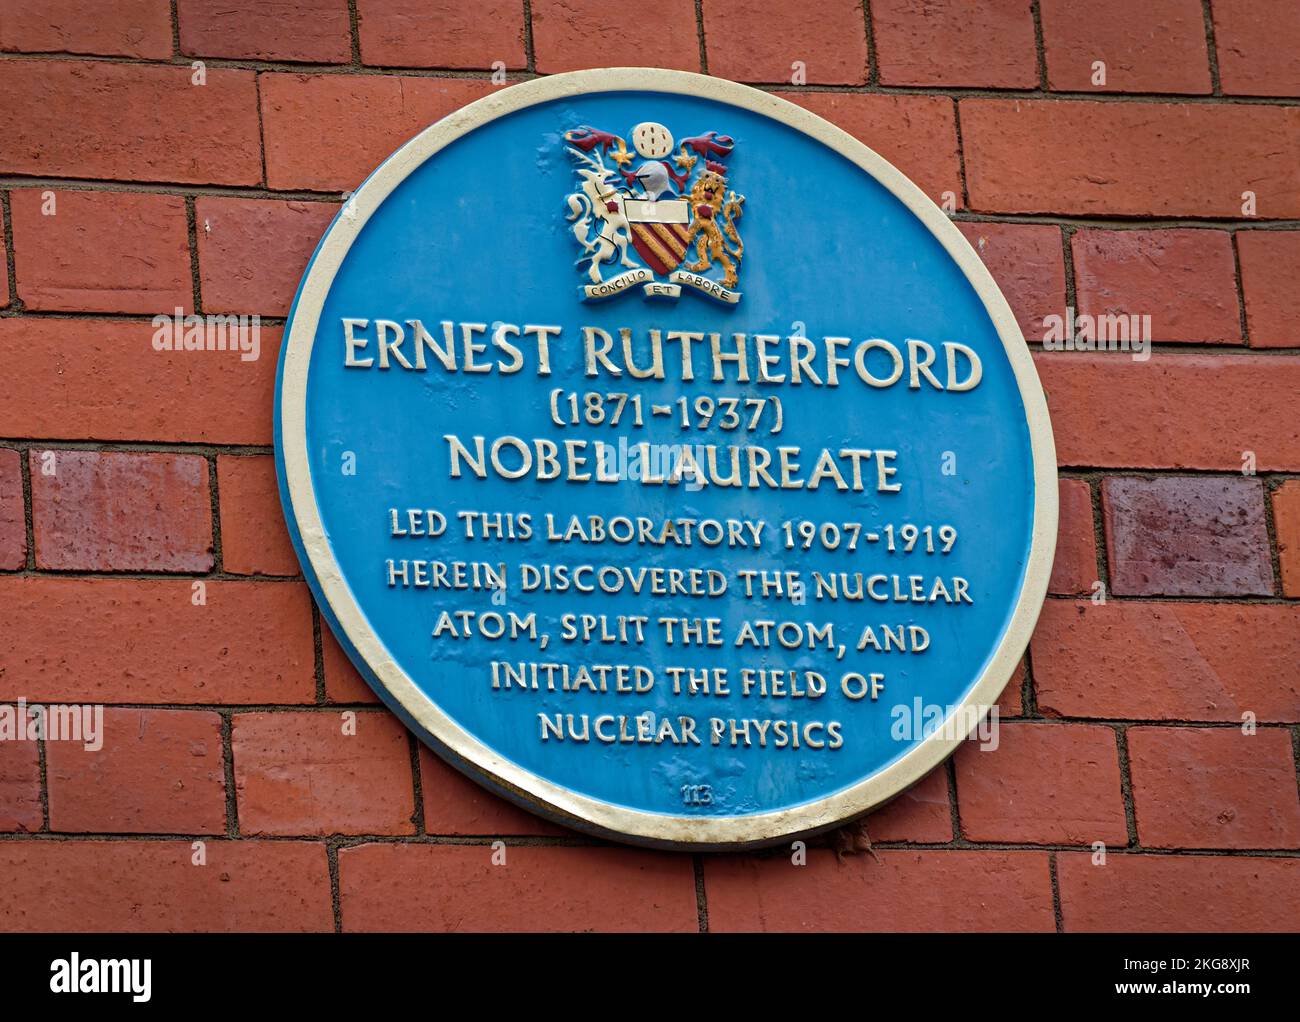 Blue Plate in Coupland Street dell'Università di Manchester per celebrare il lavoro svolto da Ernest Rutherford, che divide l'atomo e la fisica nucleare. Foto Stock